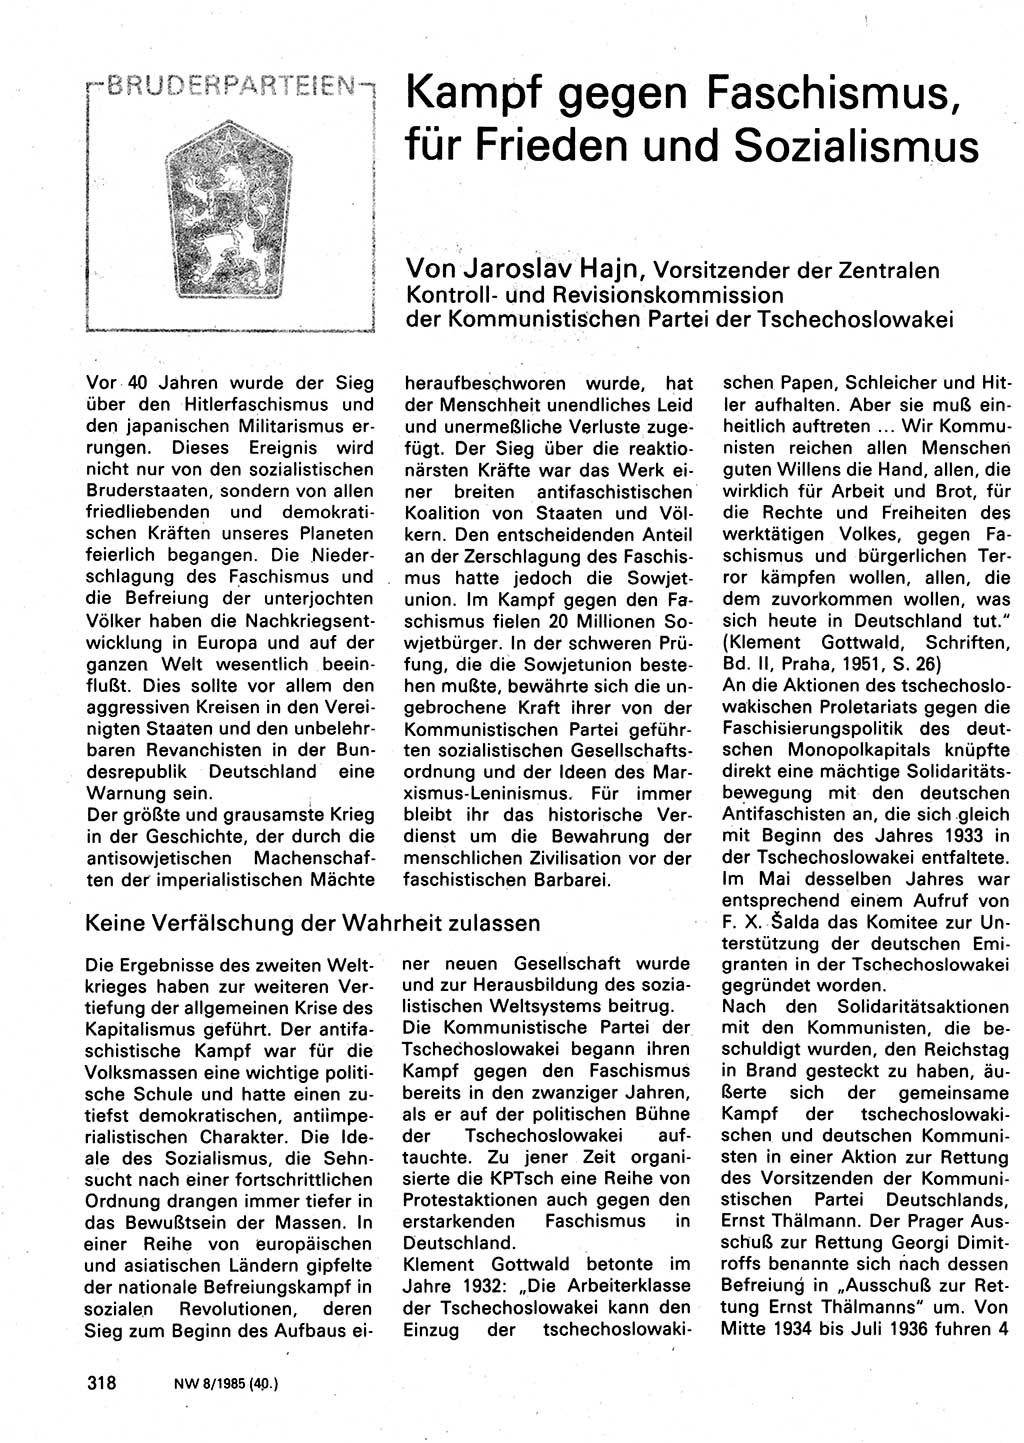 Neuer Weg (NW), Organ des Zentralkomitees (ZK) der SED (Sozialistische Einheitspartei Deutschlands) für Fragen des Parteilebens, 40. Jahrgang [Deutsche Demokratische Republik (DDR)] 1985, Seite 318 (NW ZK SED DDR 1985, S. 318)